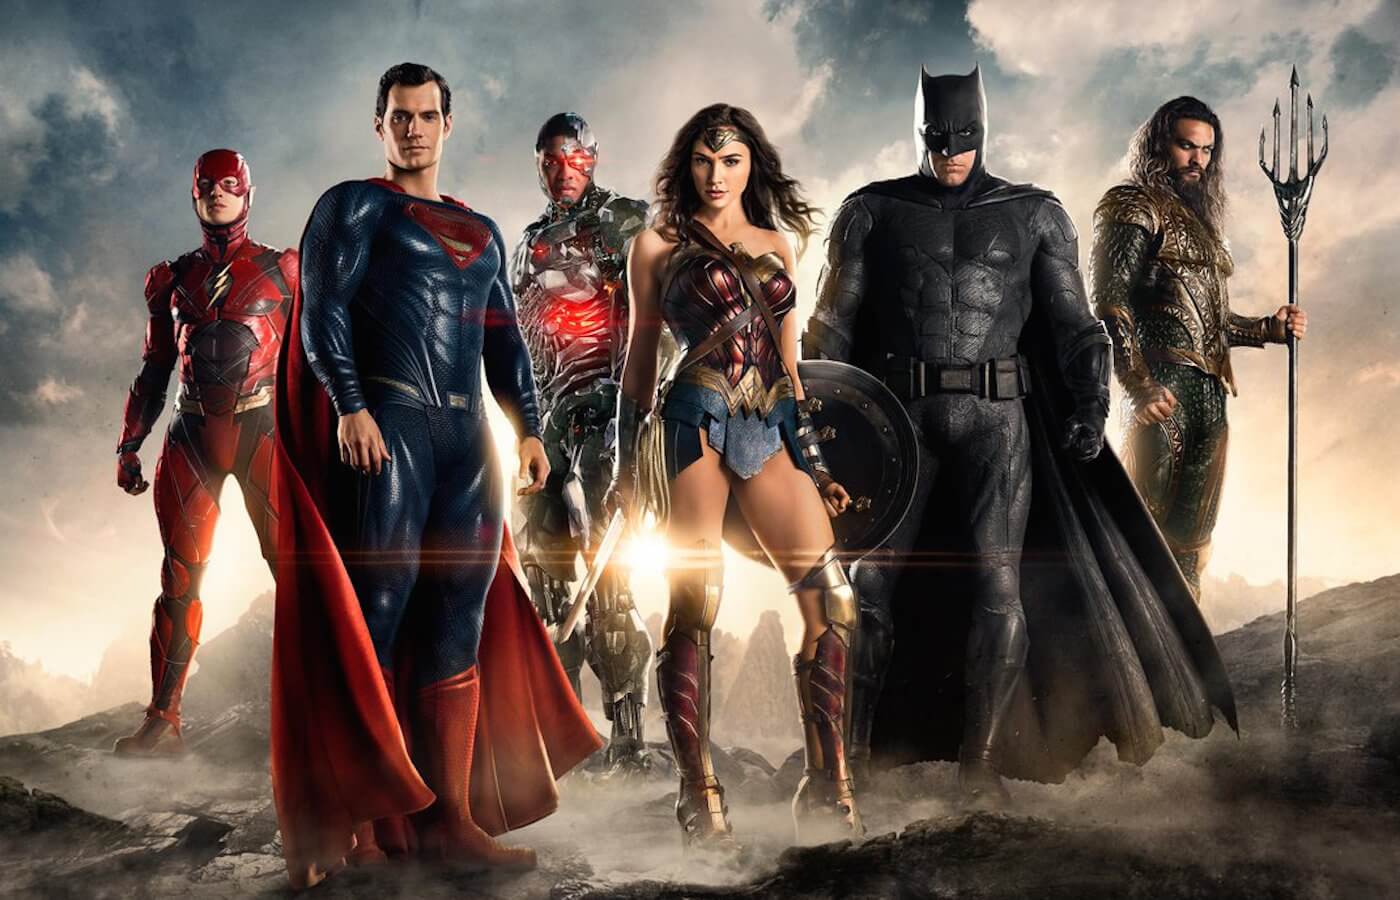 Justice league movie cast